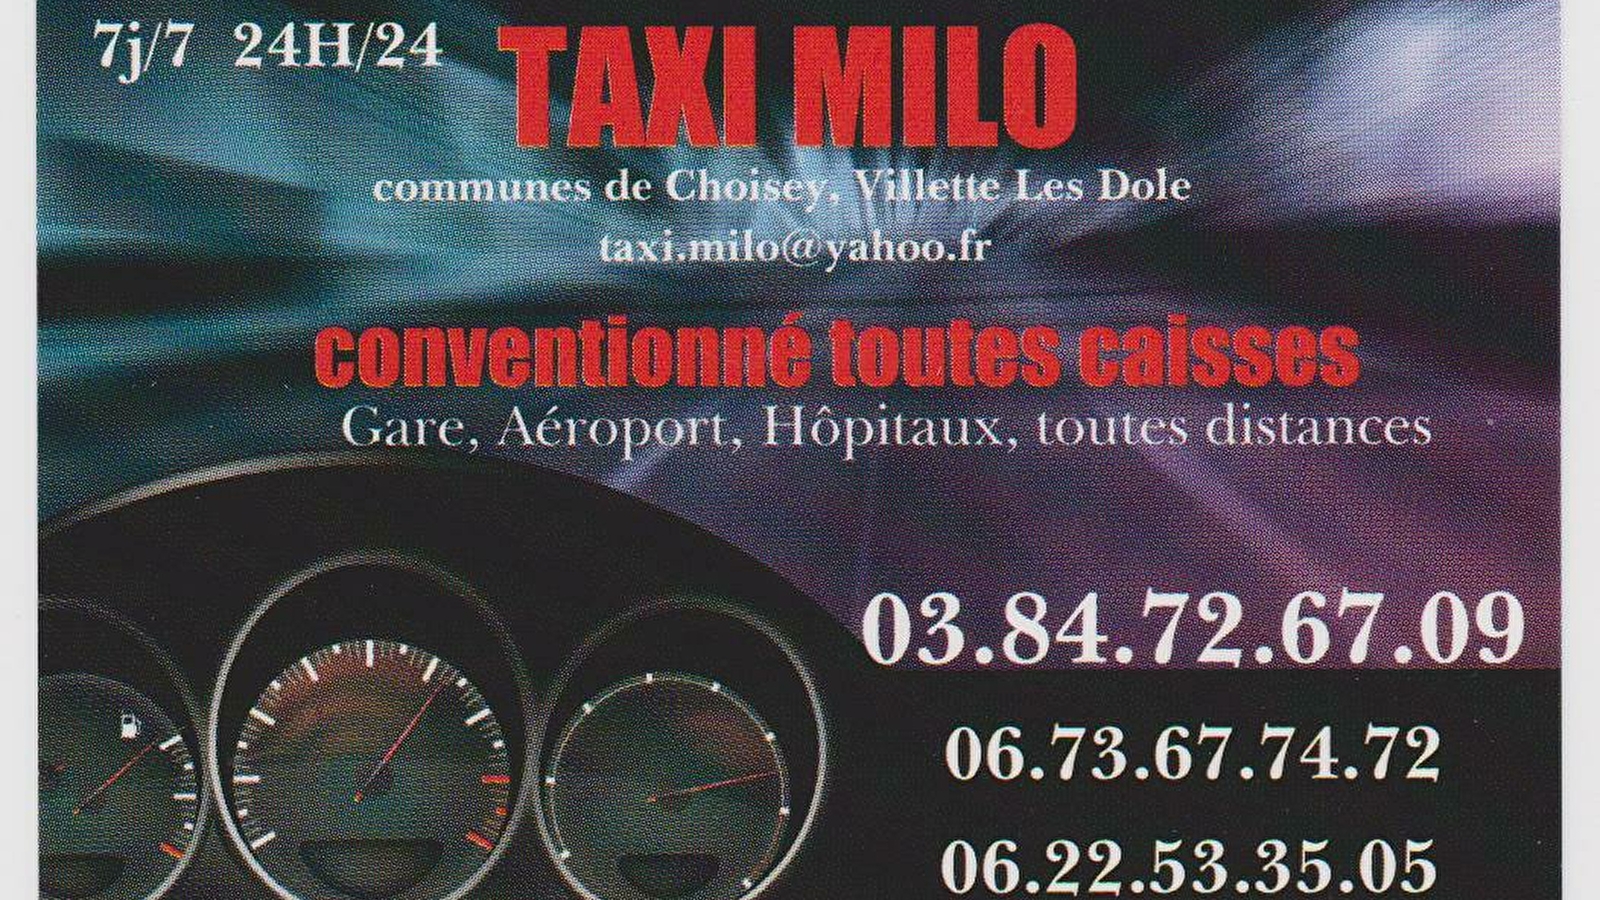 Taxi Milo